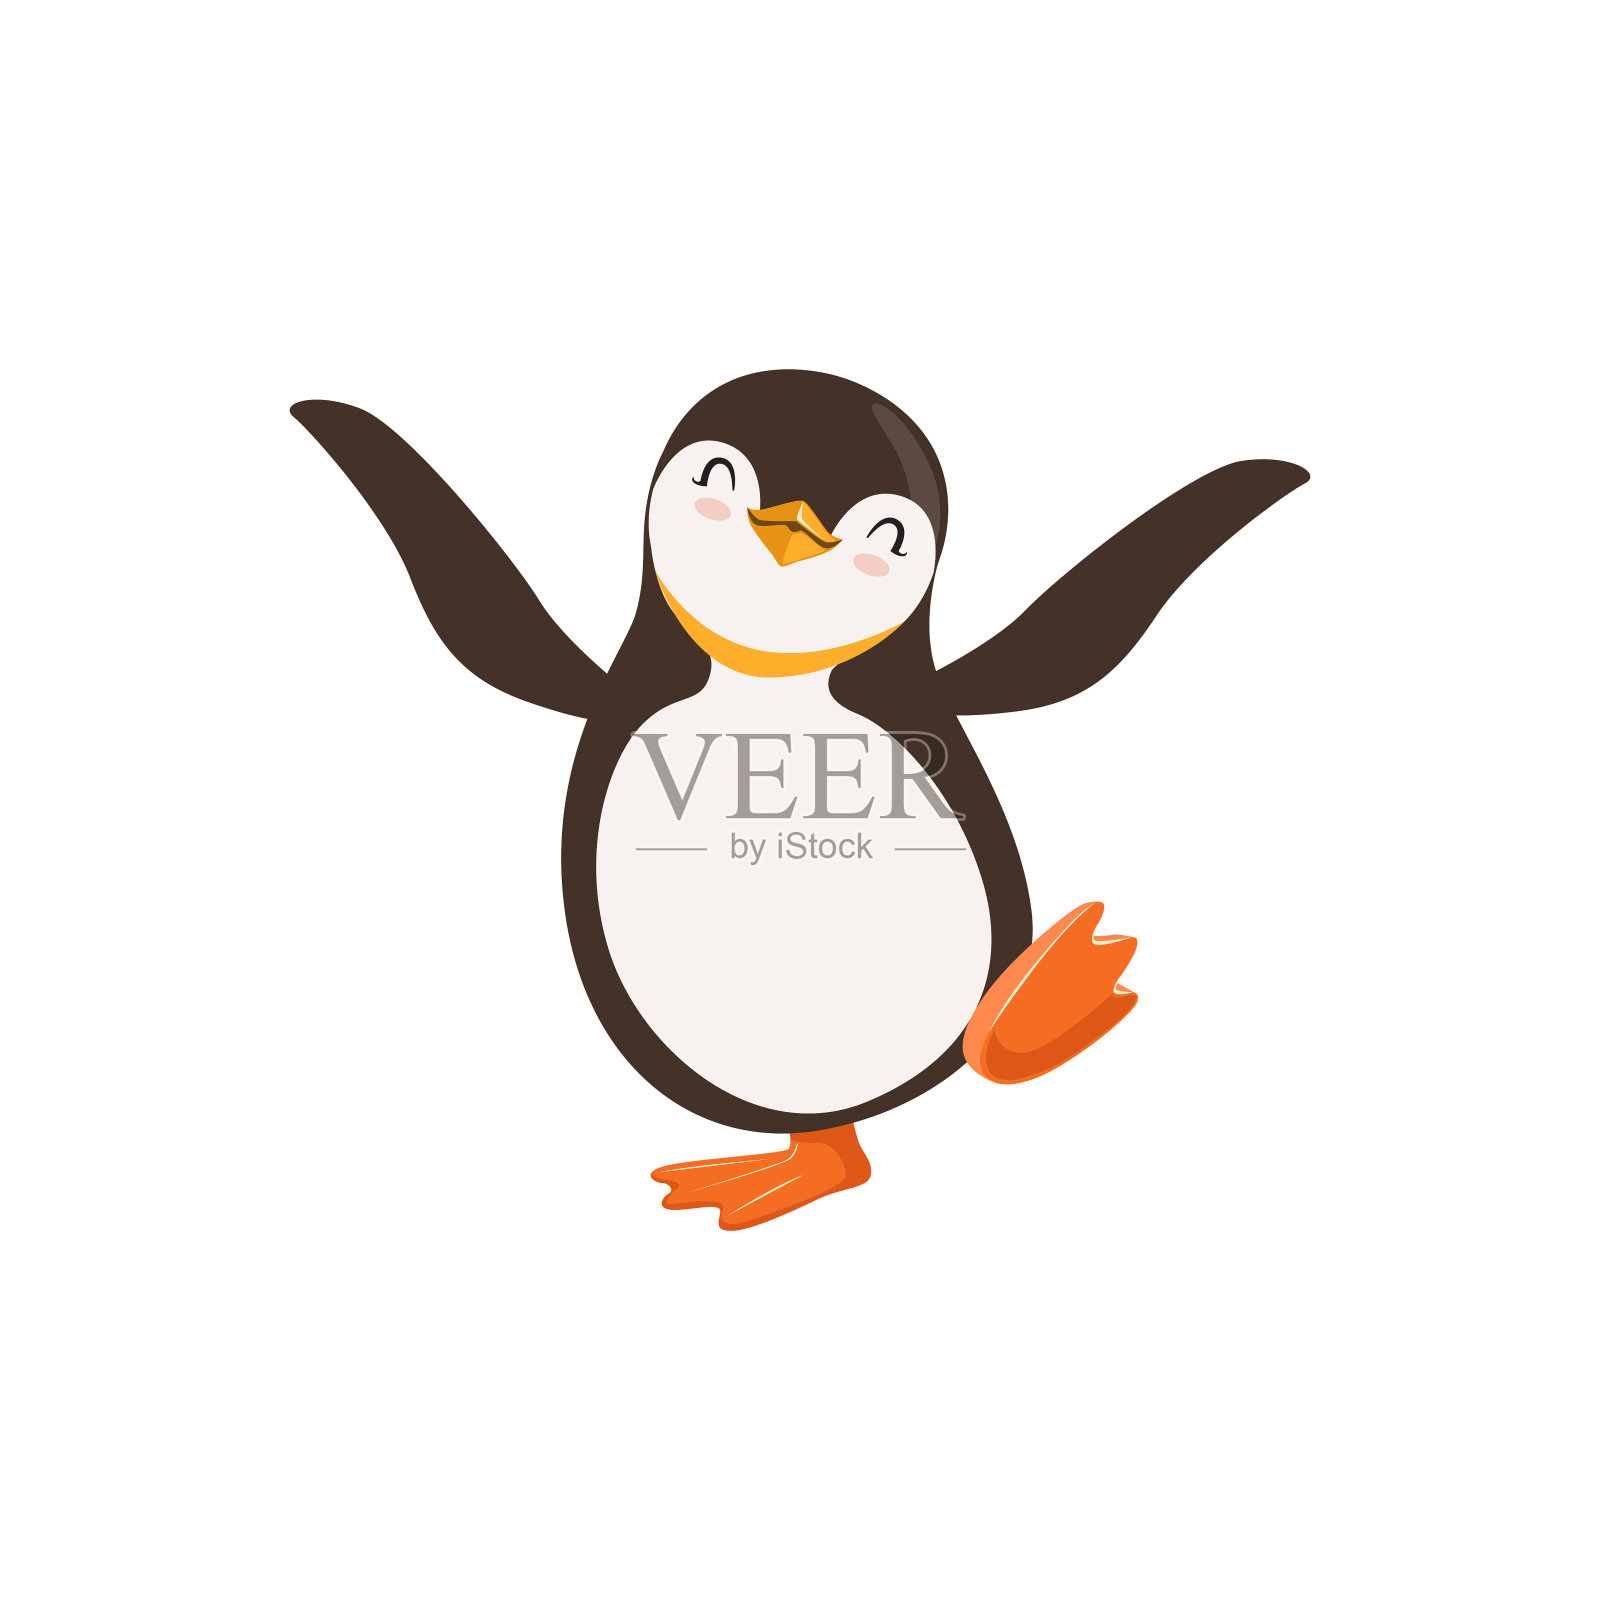 可爱向量快乐企鹅卡通人物跳舞与它的眼睛关闭在一个白色的背景设计元素图片